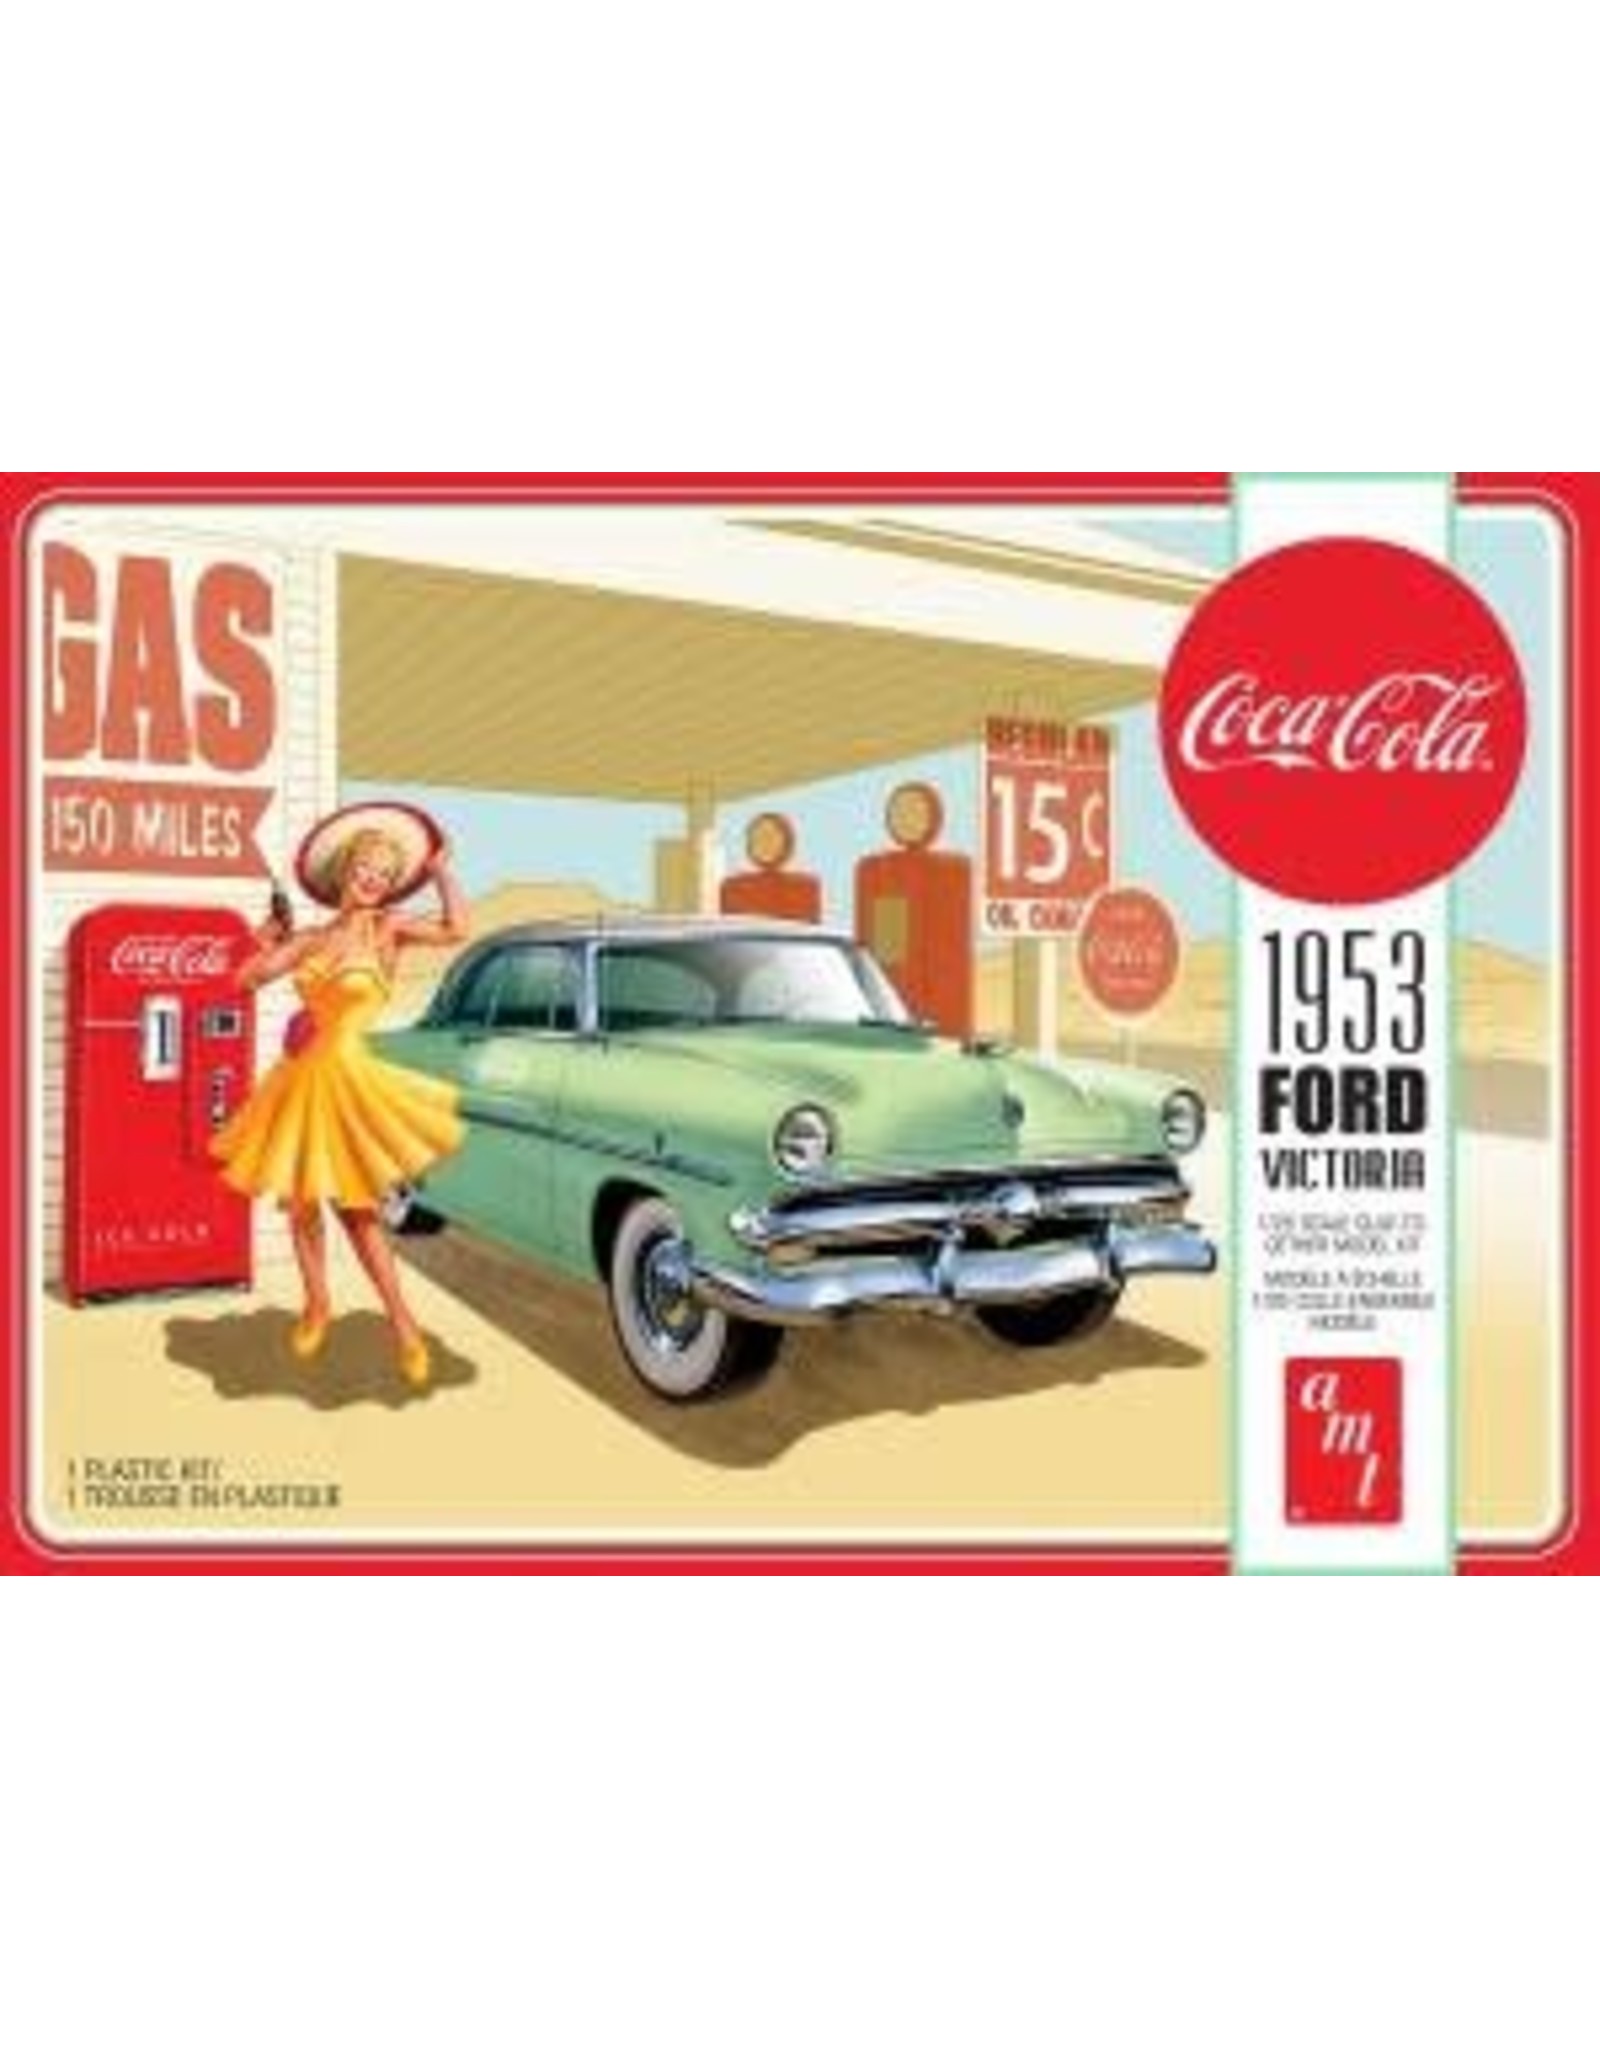 amt Coca-Cola - 1953 Ford Victoria